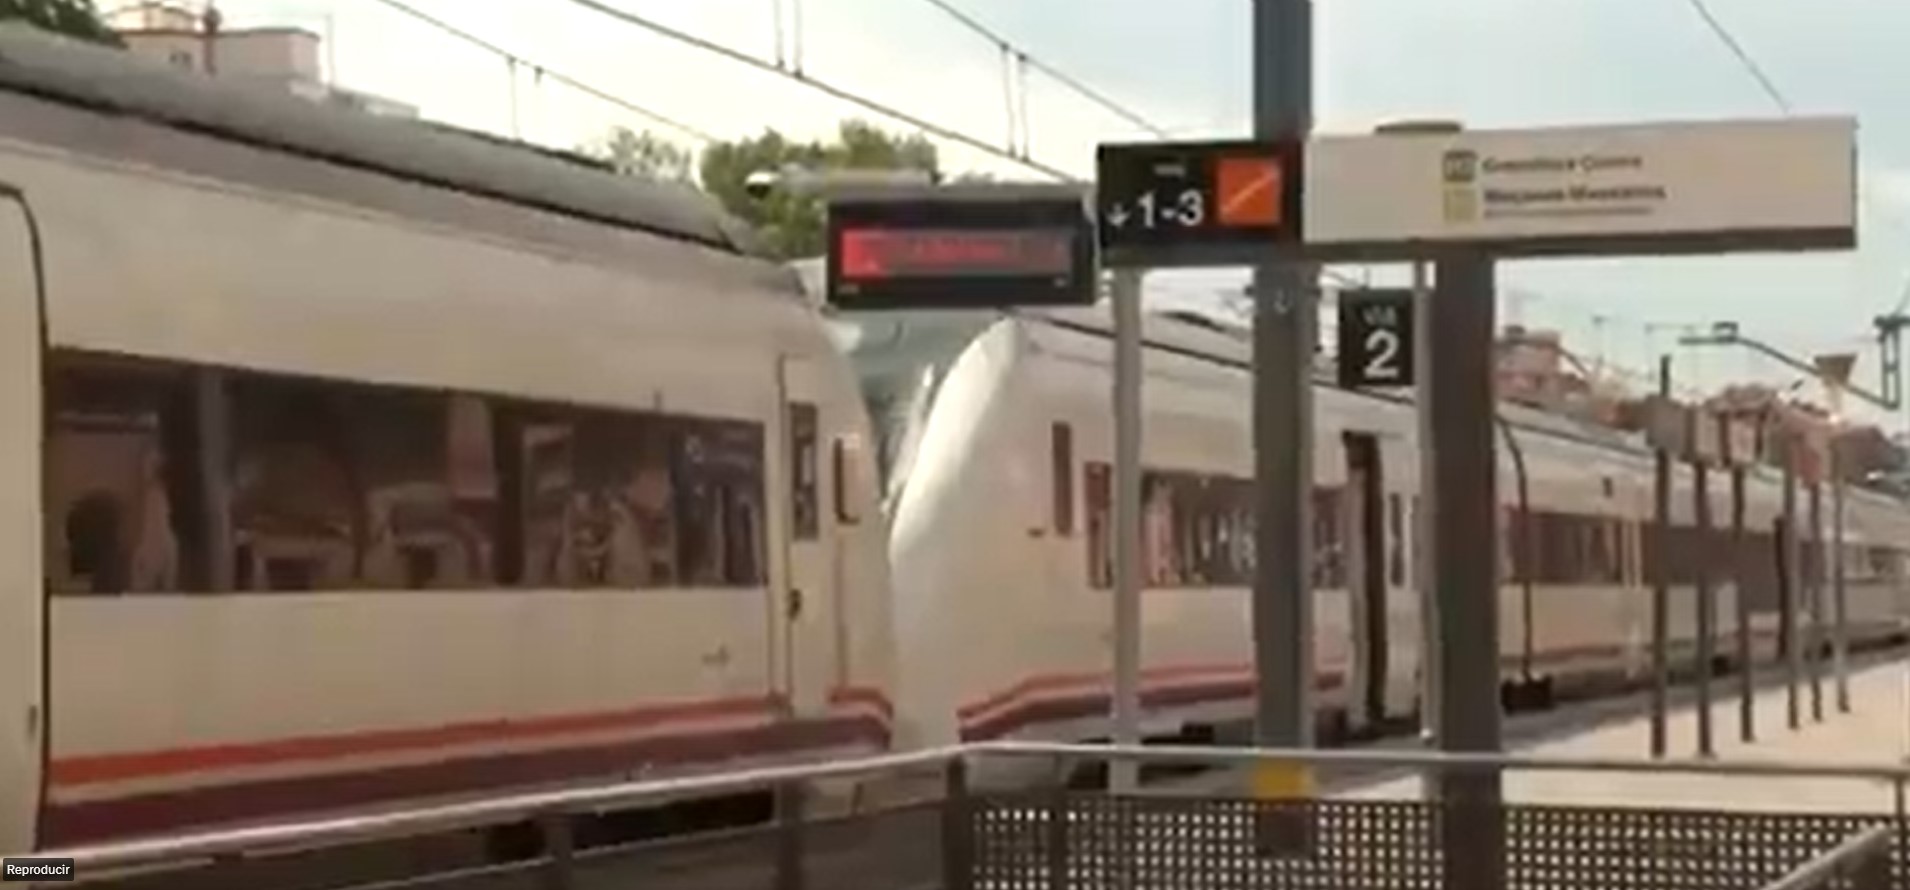 Gobierno español dice que el incidente en los trenes en Cataluña ha sido “intencionado”